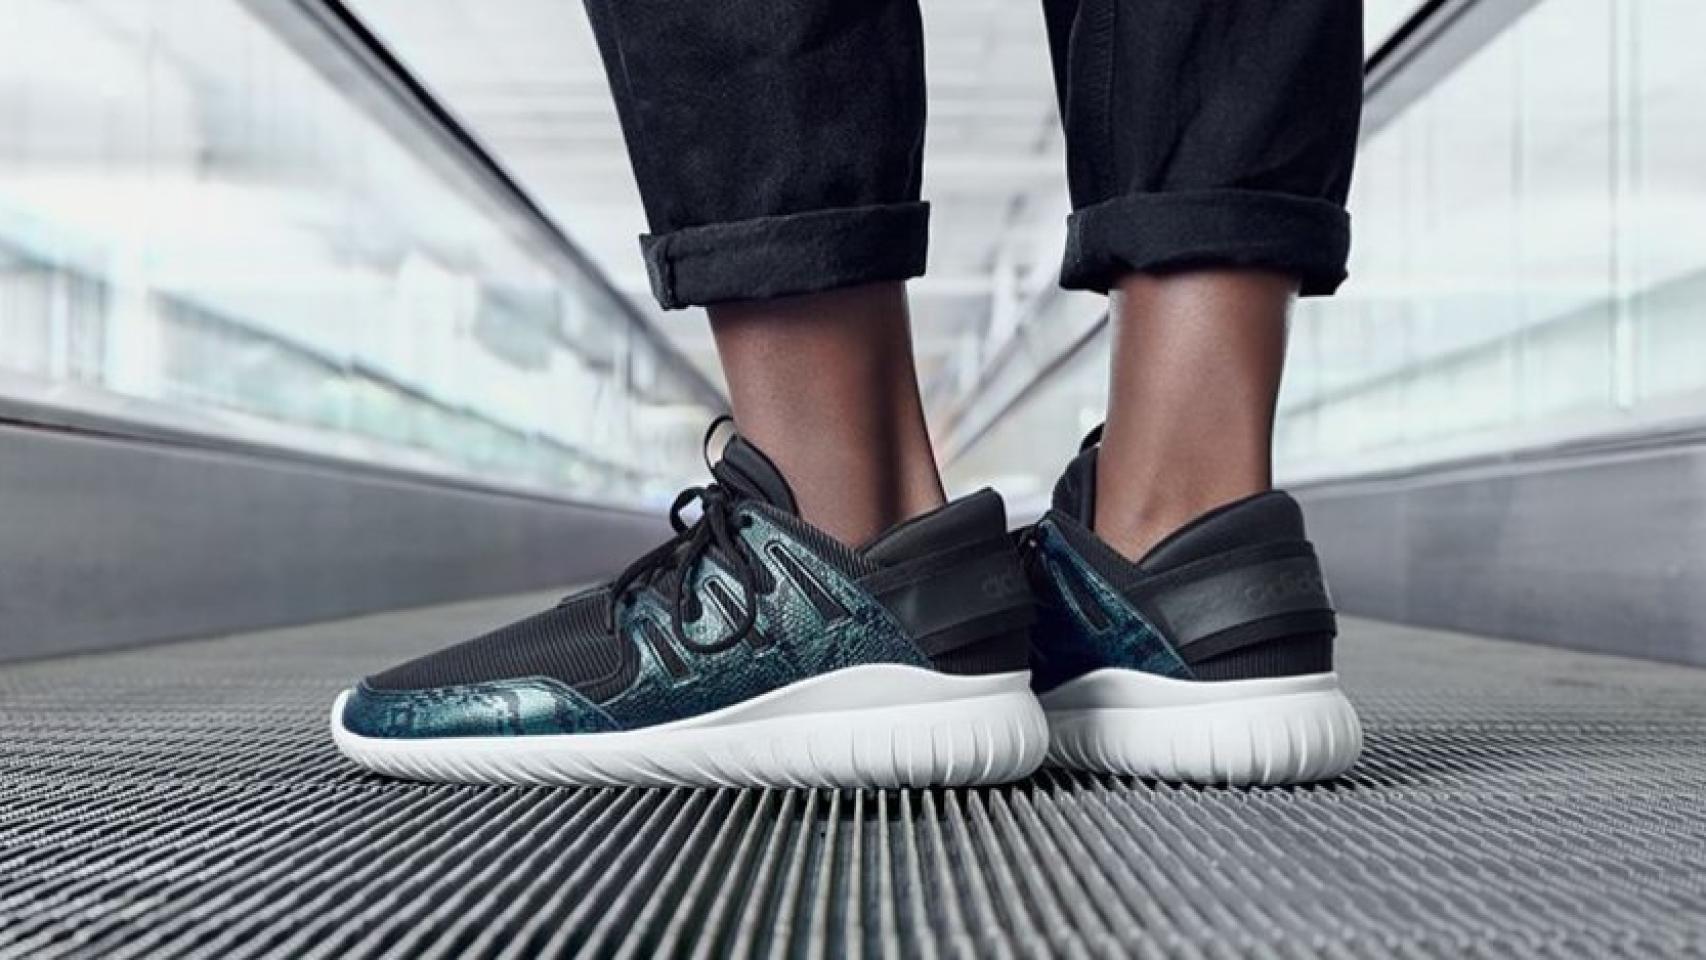 compensar Separar semanal Adidas saca nuevas versiones de su colección de zapatillas Tubular